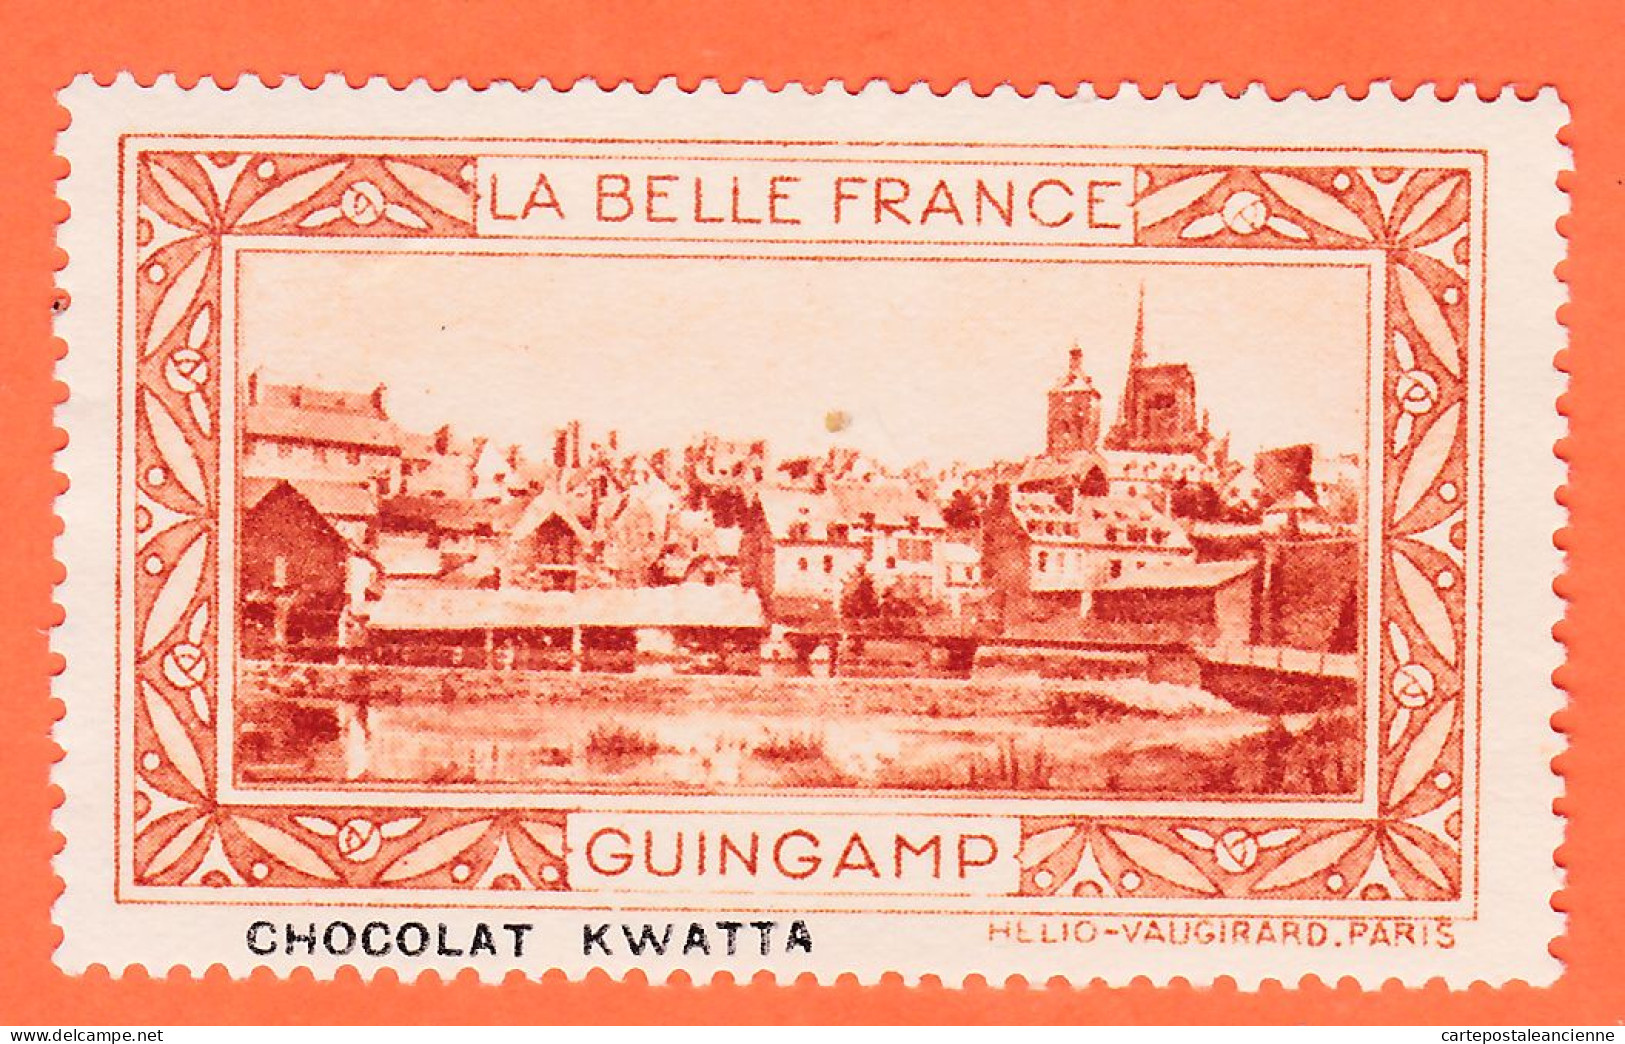 00158 ● GUINGAMP 22-Cotes Armor Pub Chocolat KWATTA Vignette Collection BELLE FRANCE HELIO-VAUGIRARD Erinnophilie - Tourisme (Vignettes)